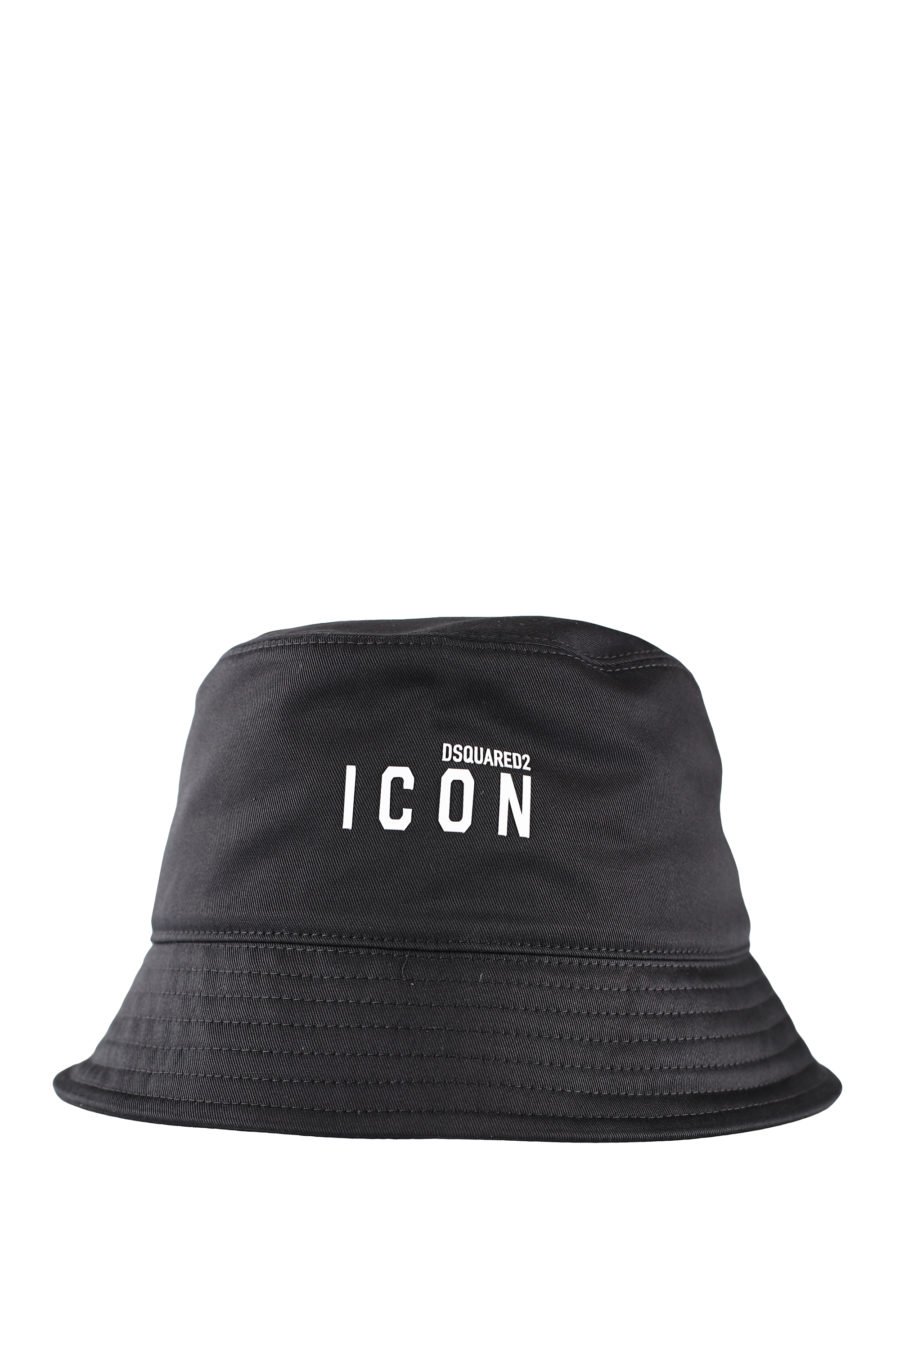 Chapeau de pêcheur noir avec logo "icon" - IMG 0067